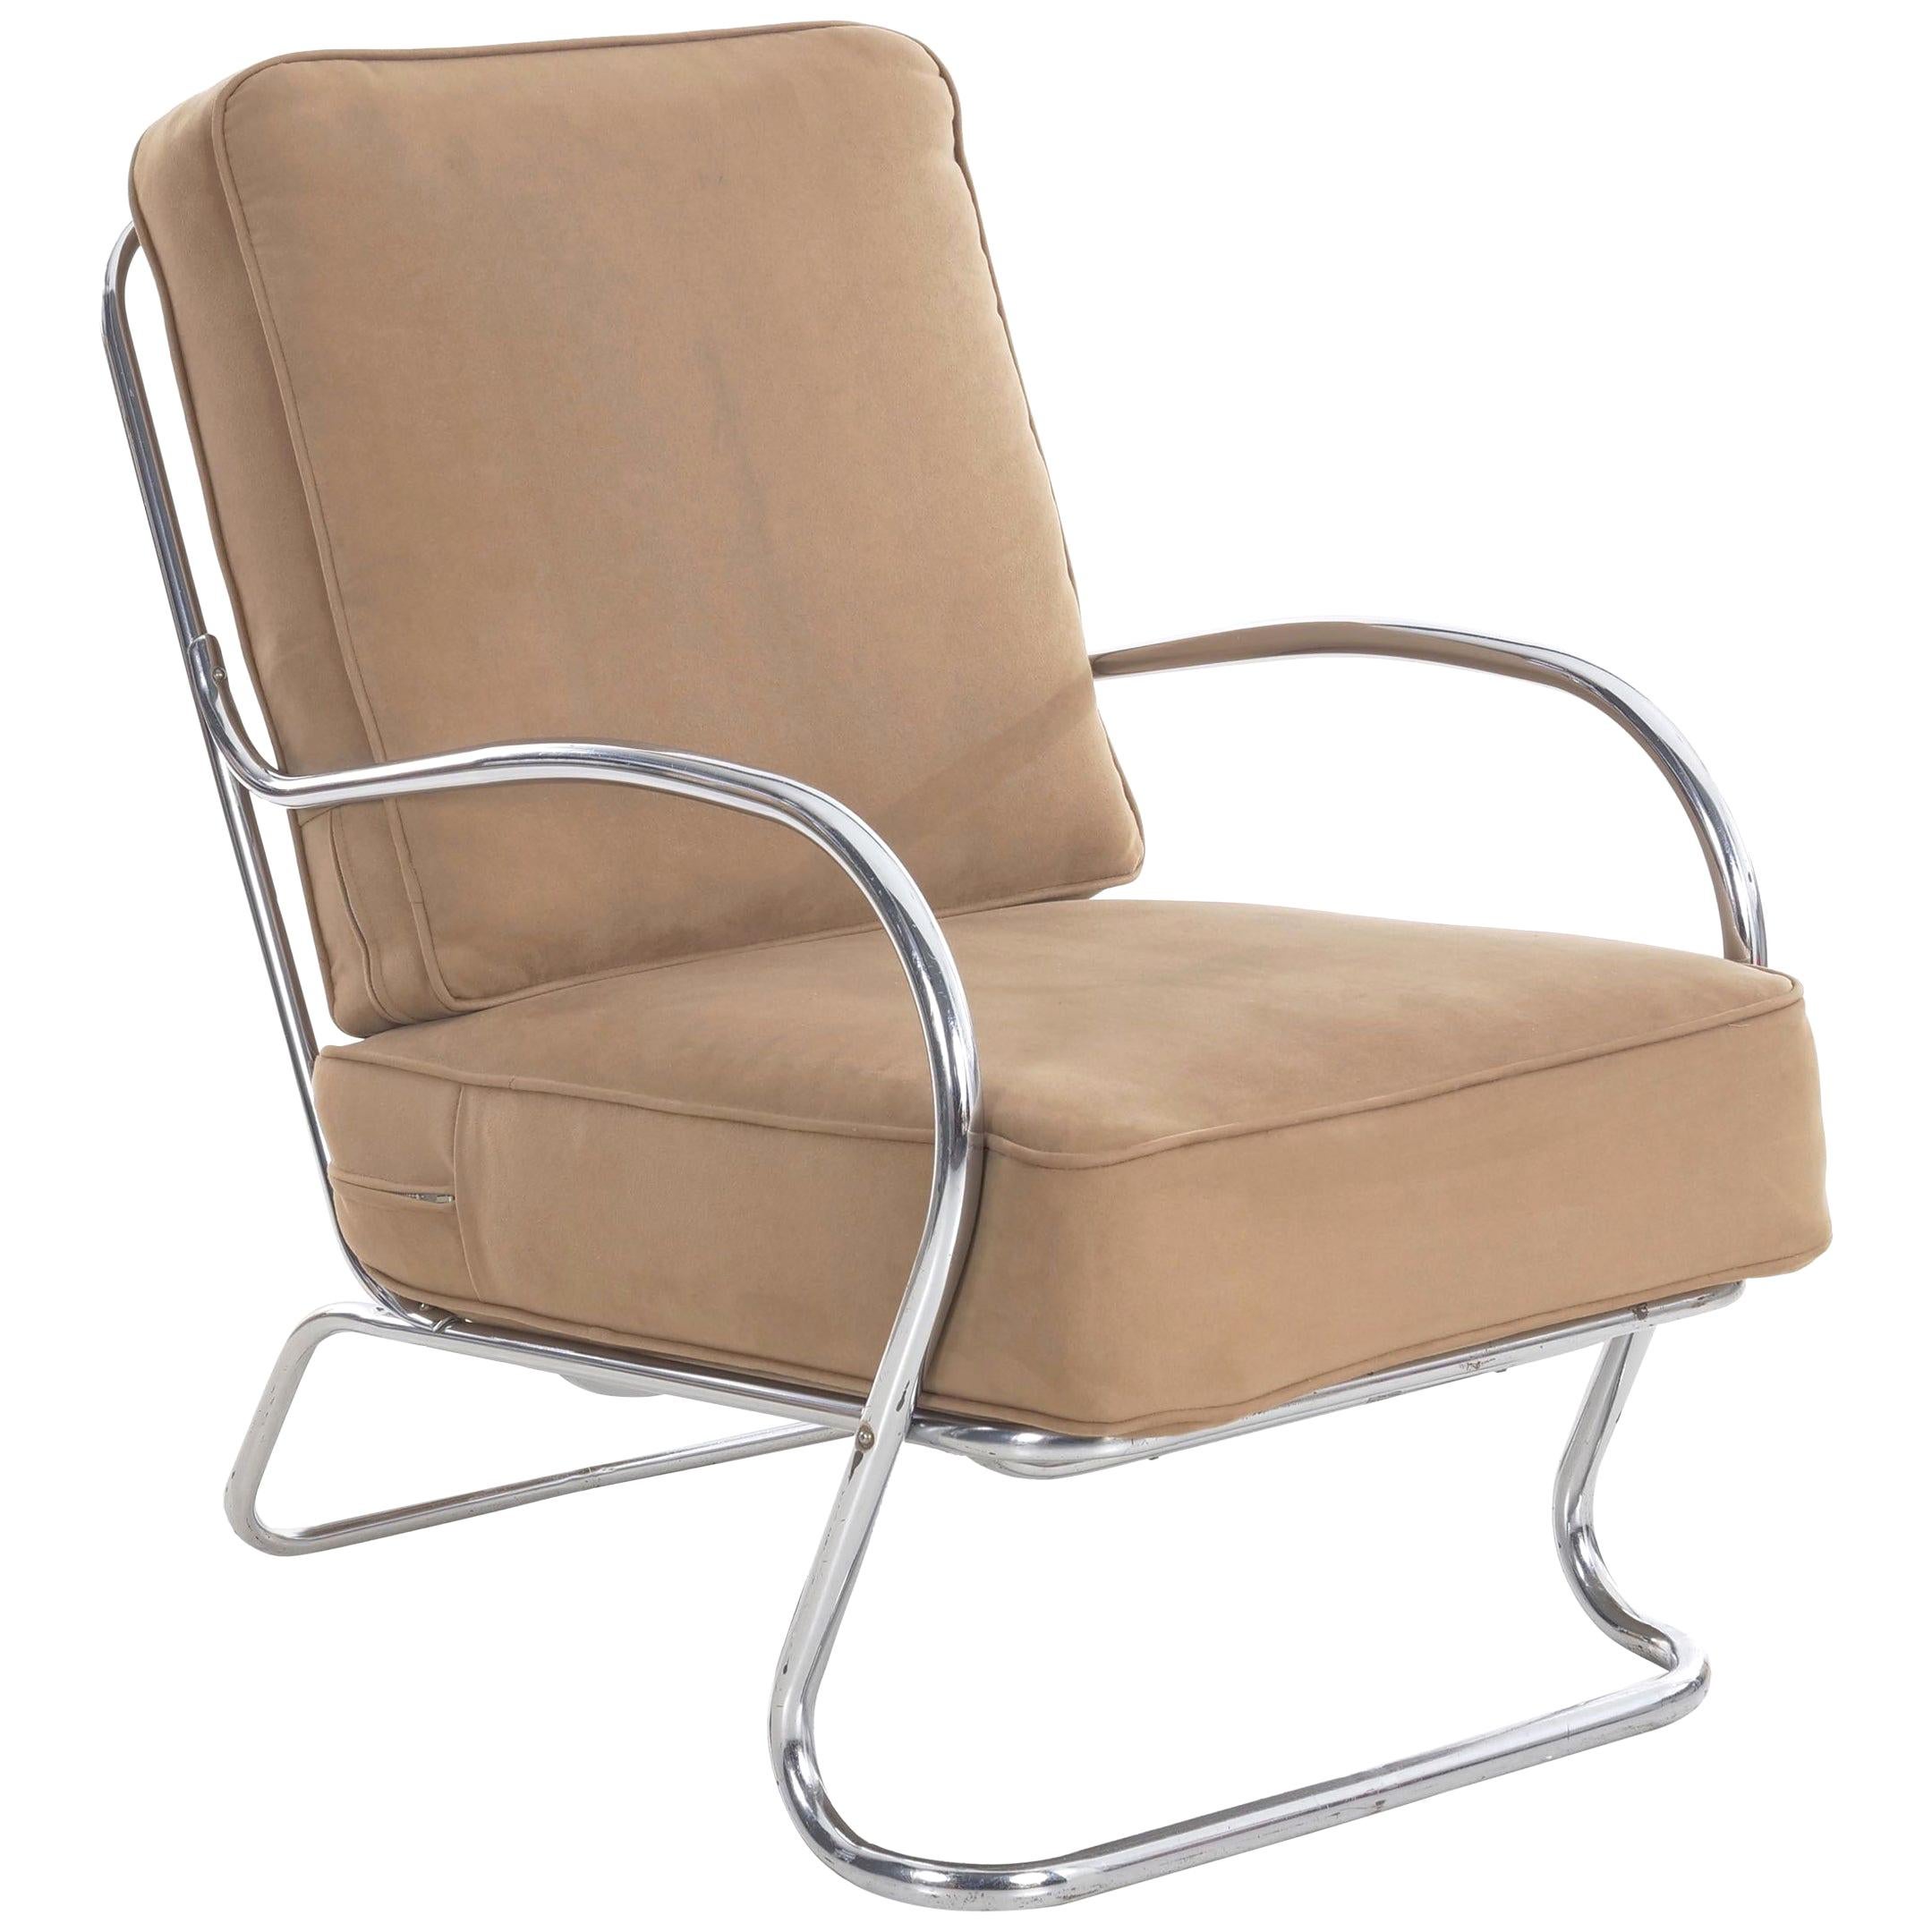 Streamline Moderne KEM Weber for Lloyd Chrome Tubular Lounge Chair, circa 1940s